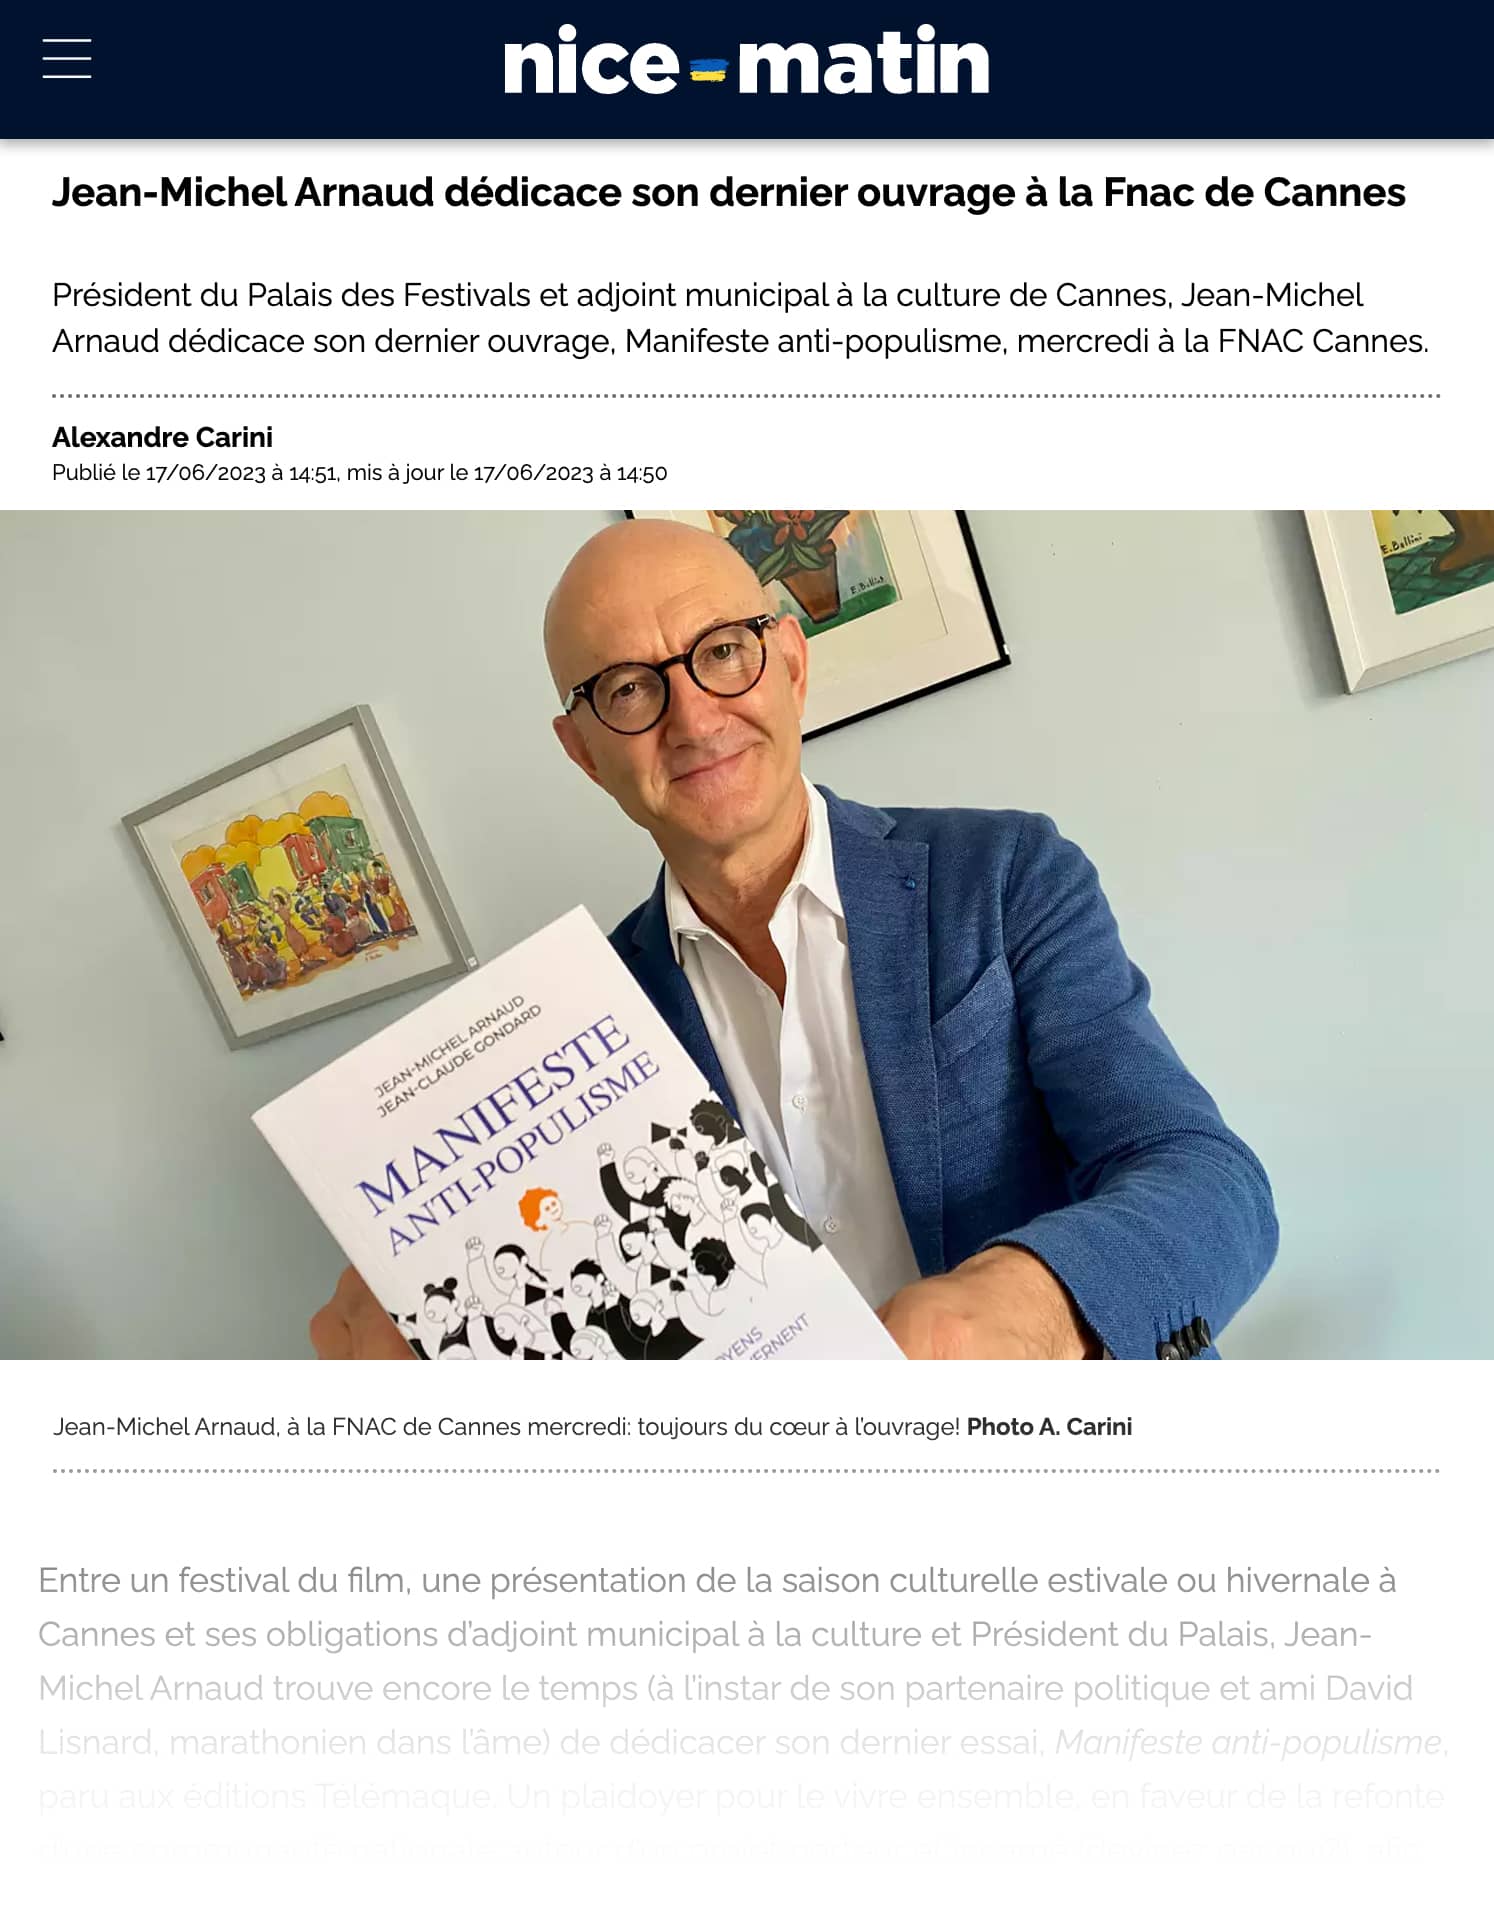 Jean-Michel Arnaud dédicace son dernier ouvrage à la Fnac de Cannes